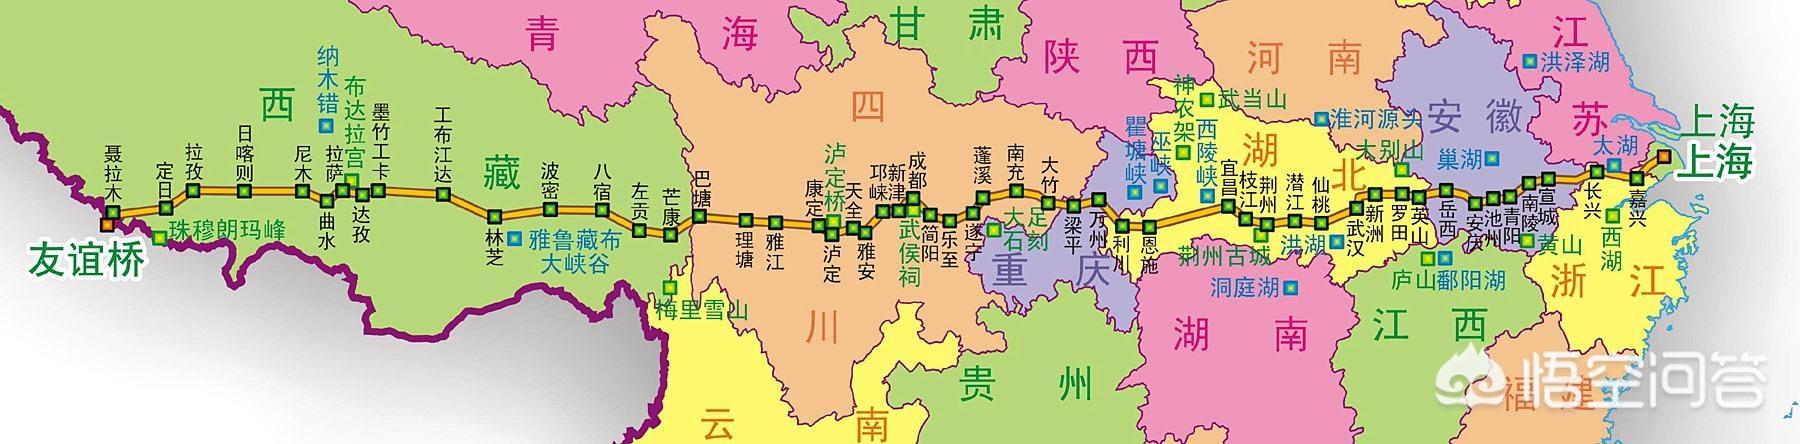 中国有没有和美国66号公路一样贯穿整个国家的公路?